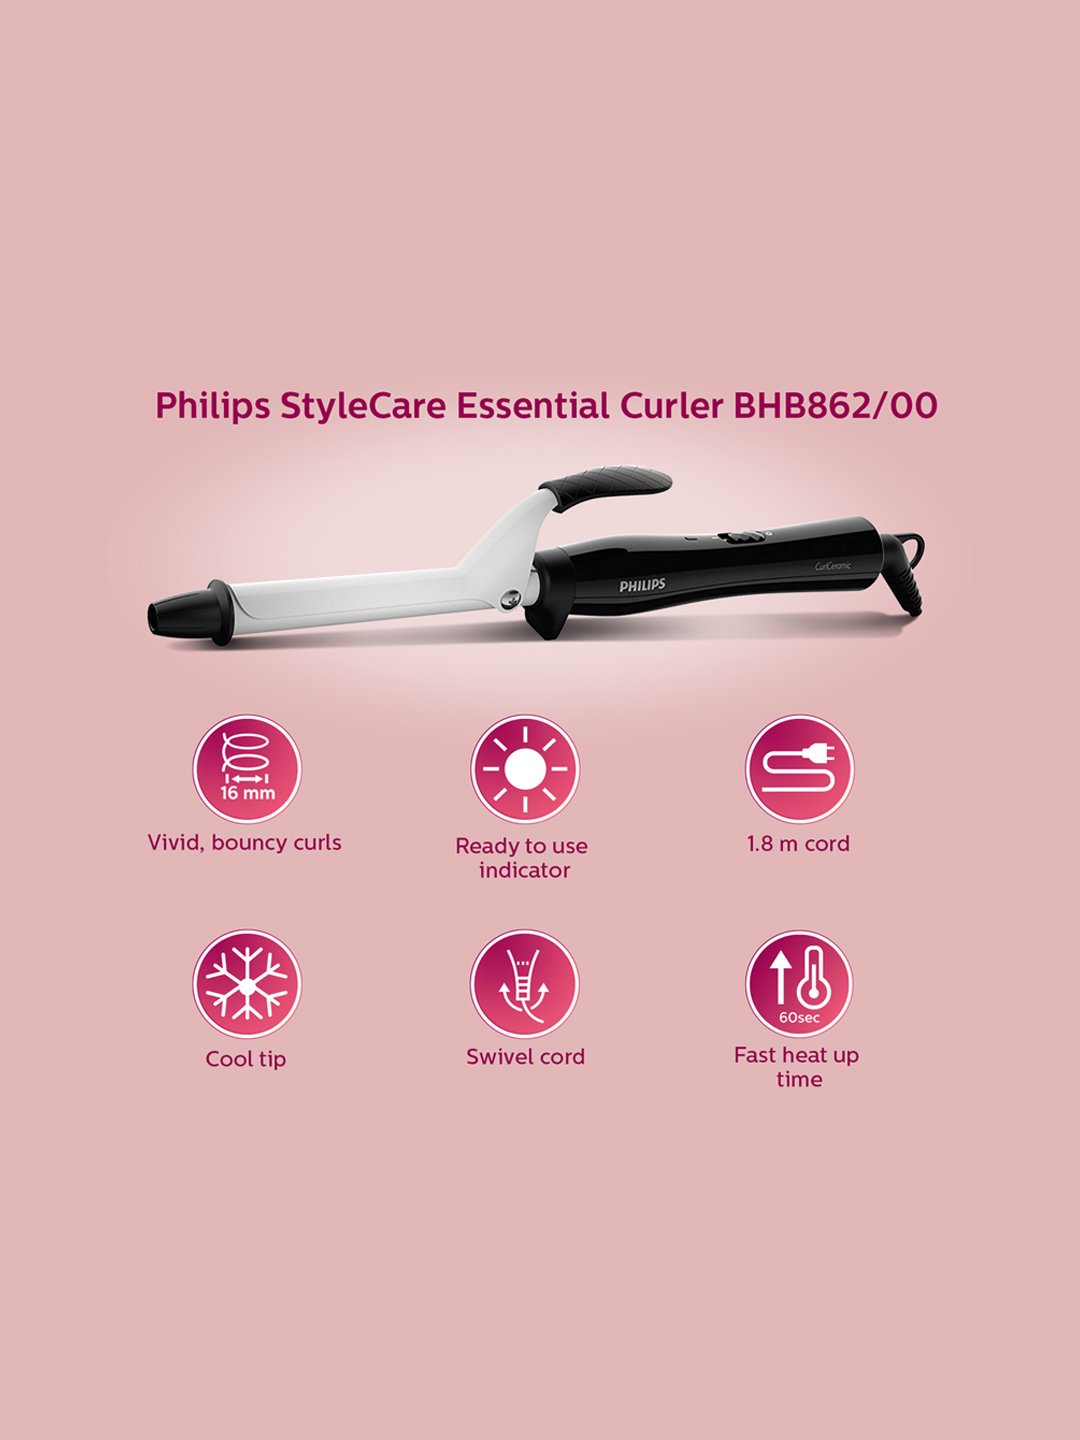 Buy Philips BHB862/HP8302/HP810060 Hair Curler, Straightener, Dryer Online  At Best Price @ Tata CLiQ